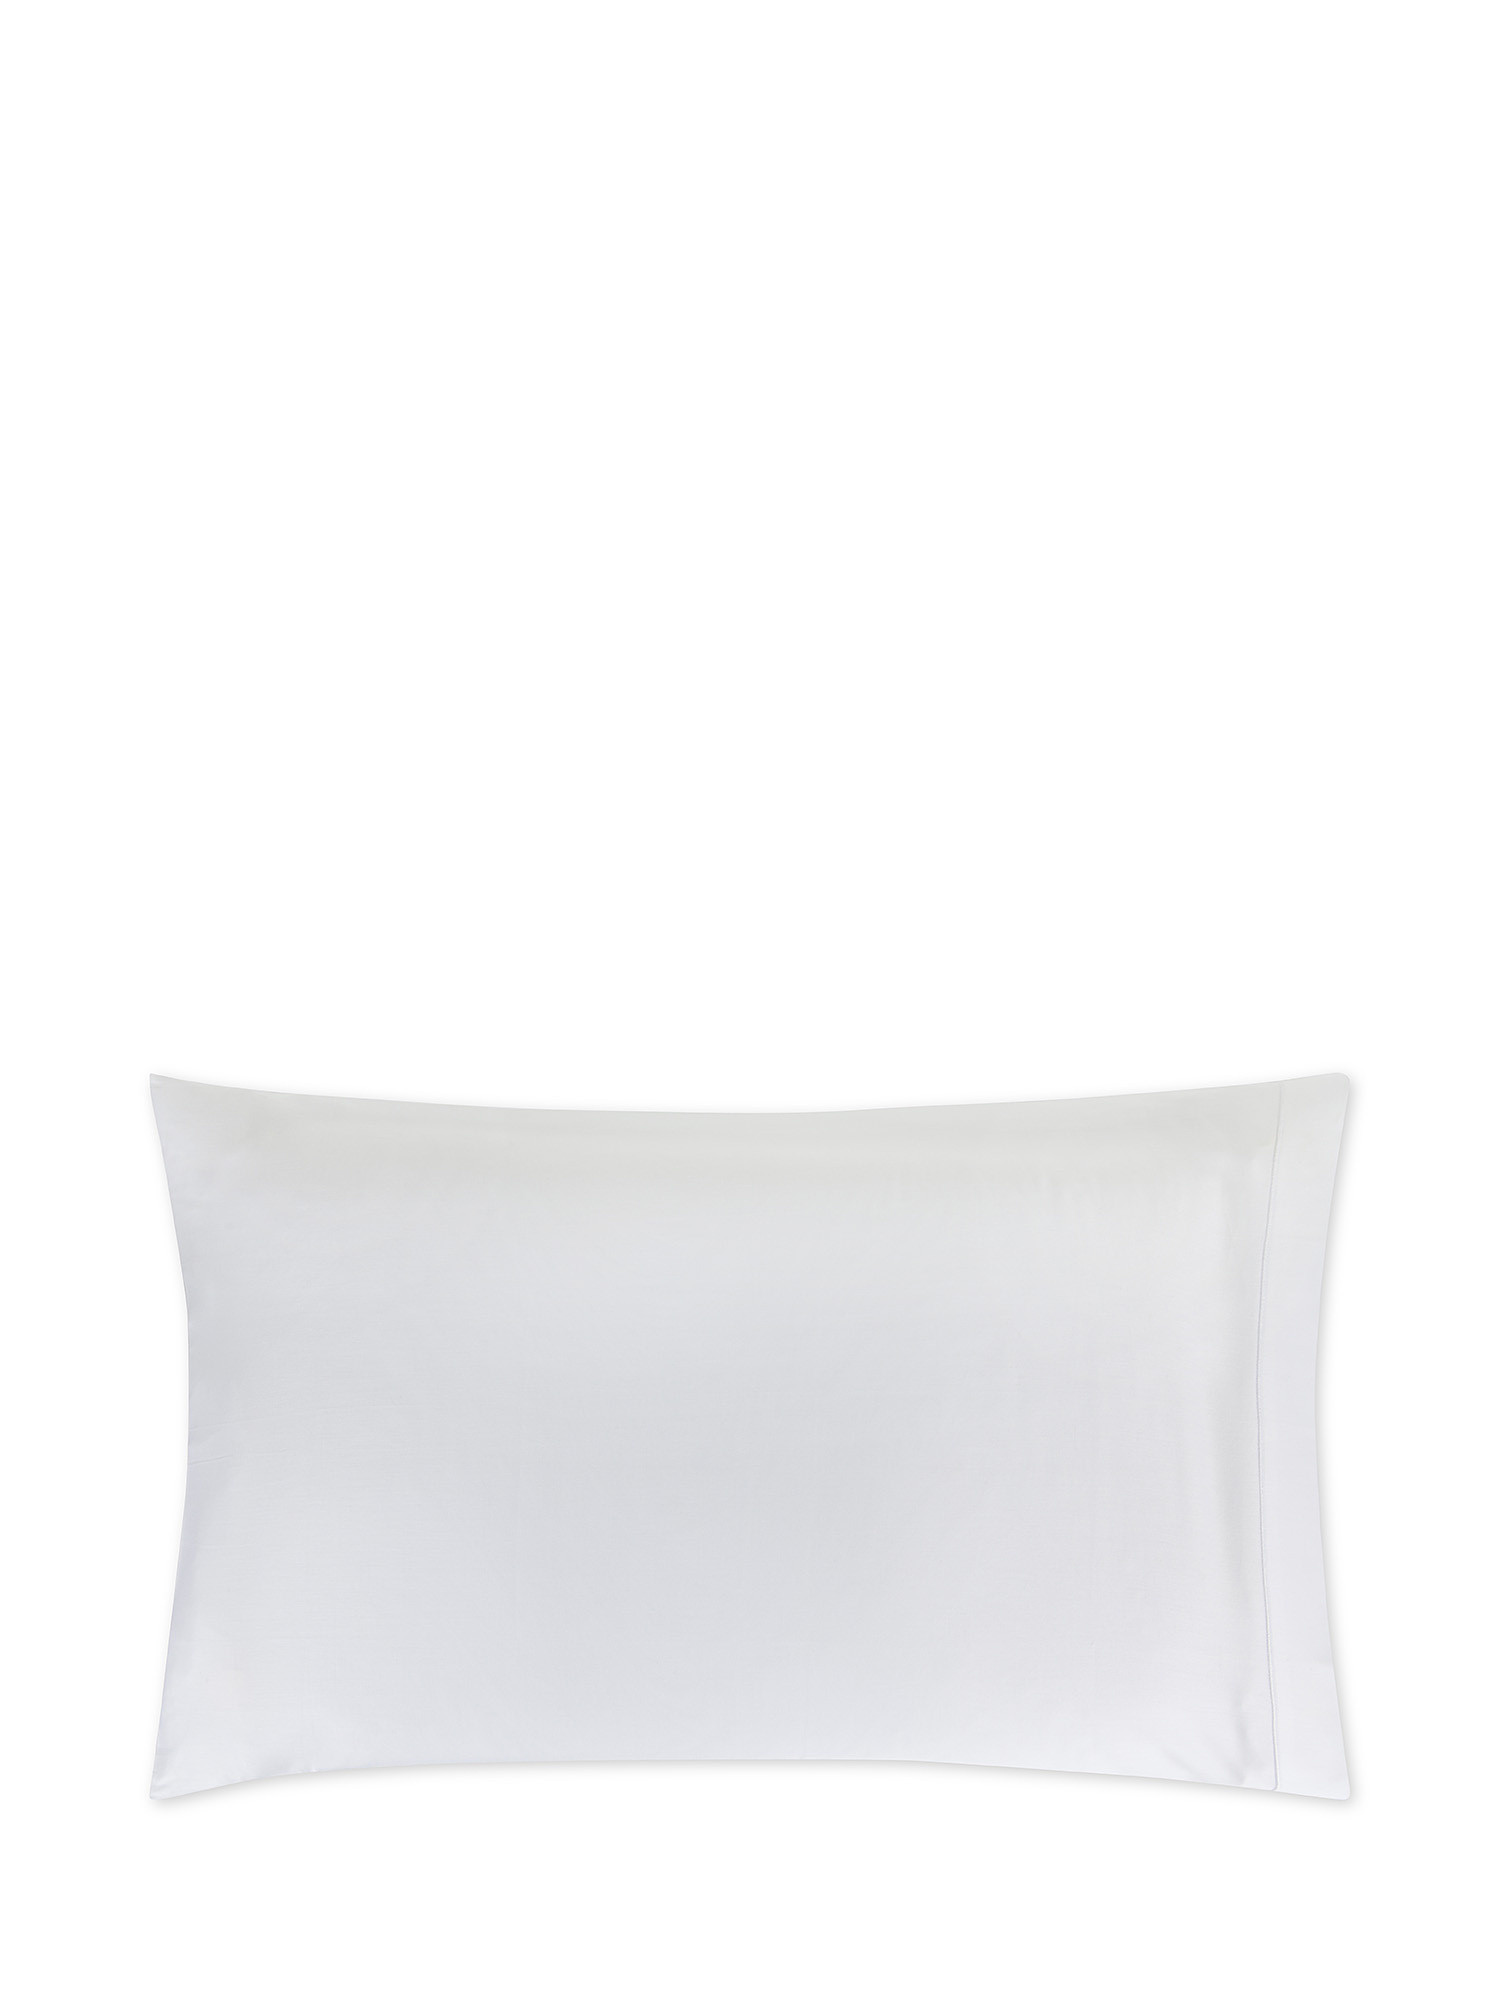 Egyptian cotton satin pillowcase Portofino, White, large image number 0